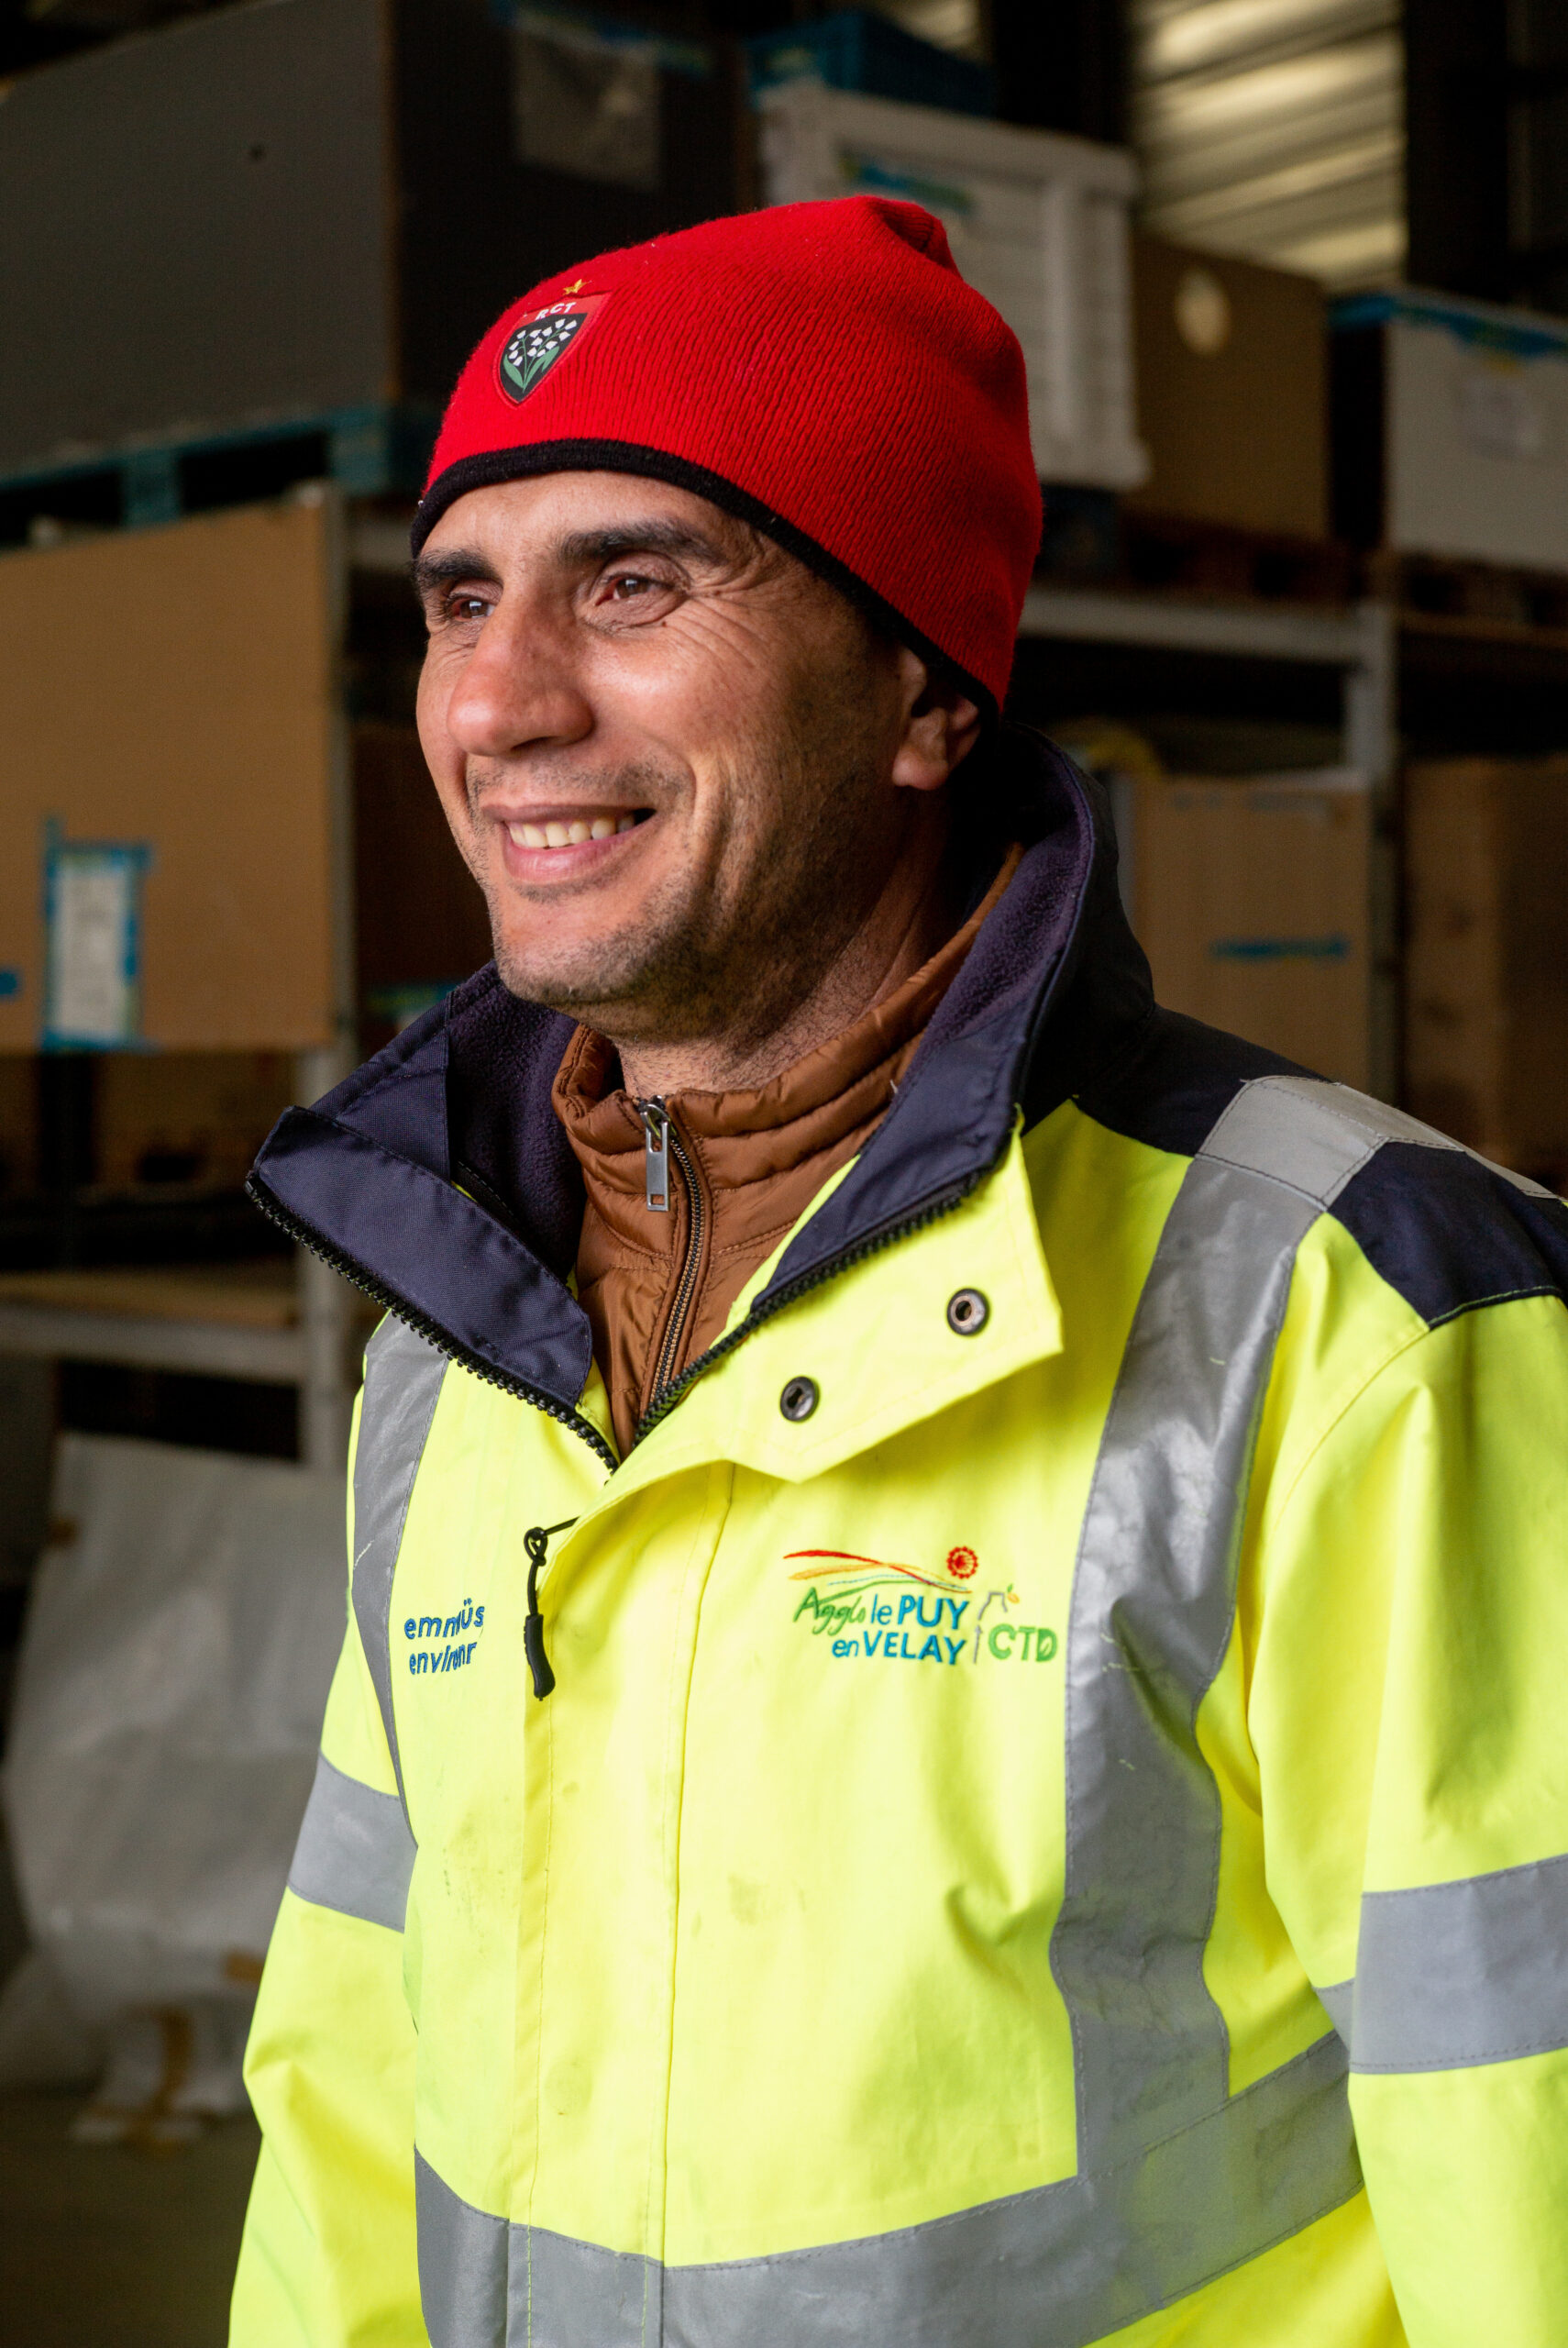 Mohammed, salarié en insertion, participe aux activités de catégorisation des déchets en recyclerie et à l’accueil des usagers.